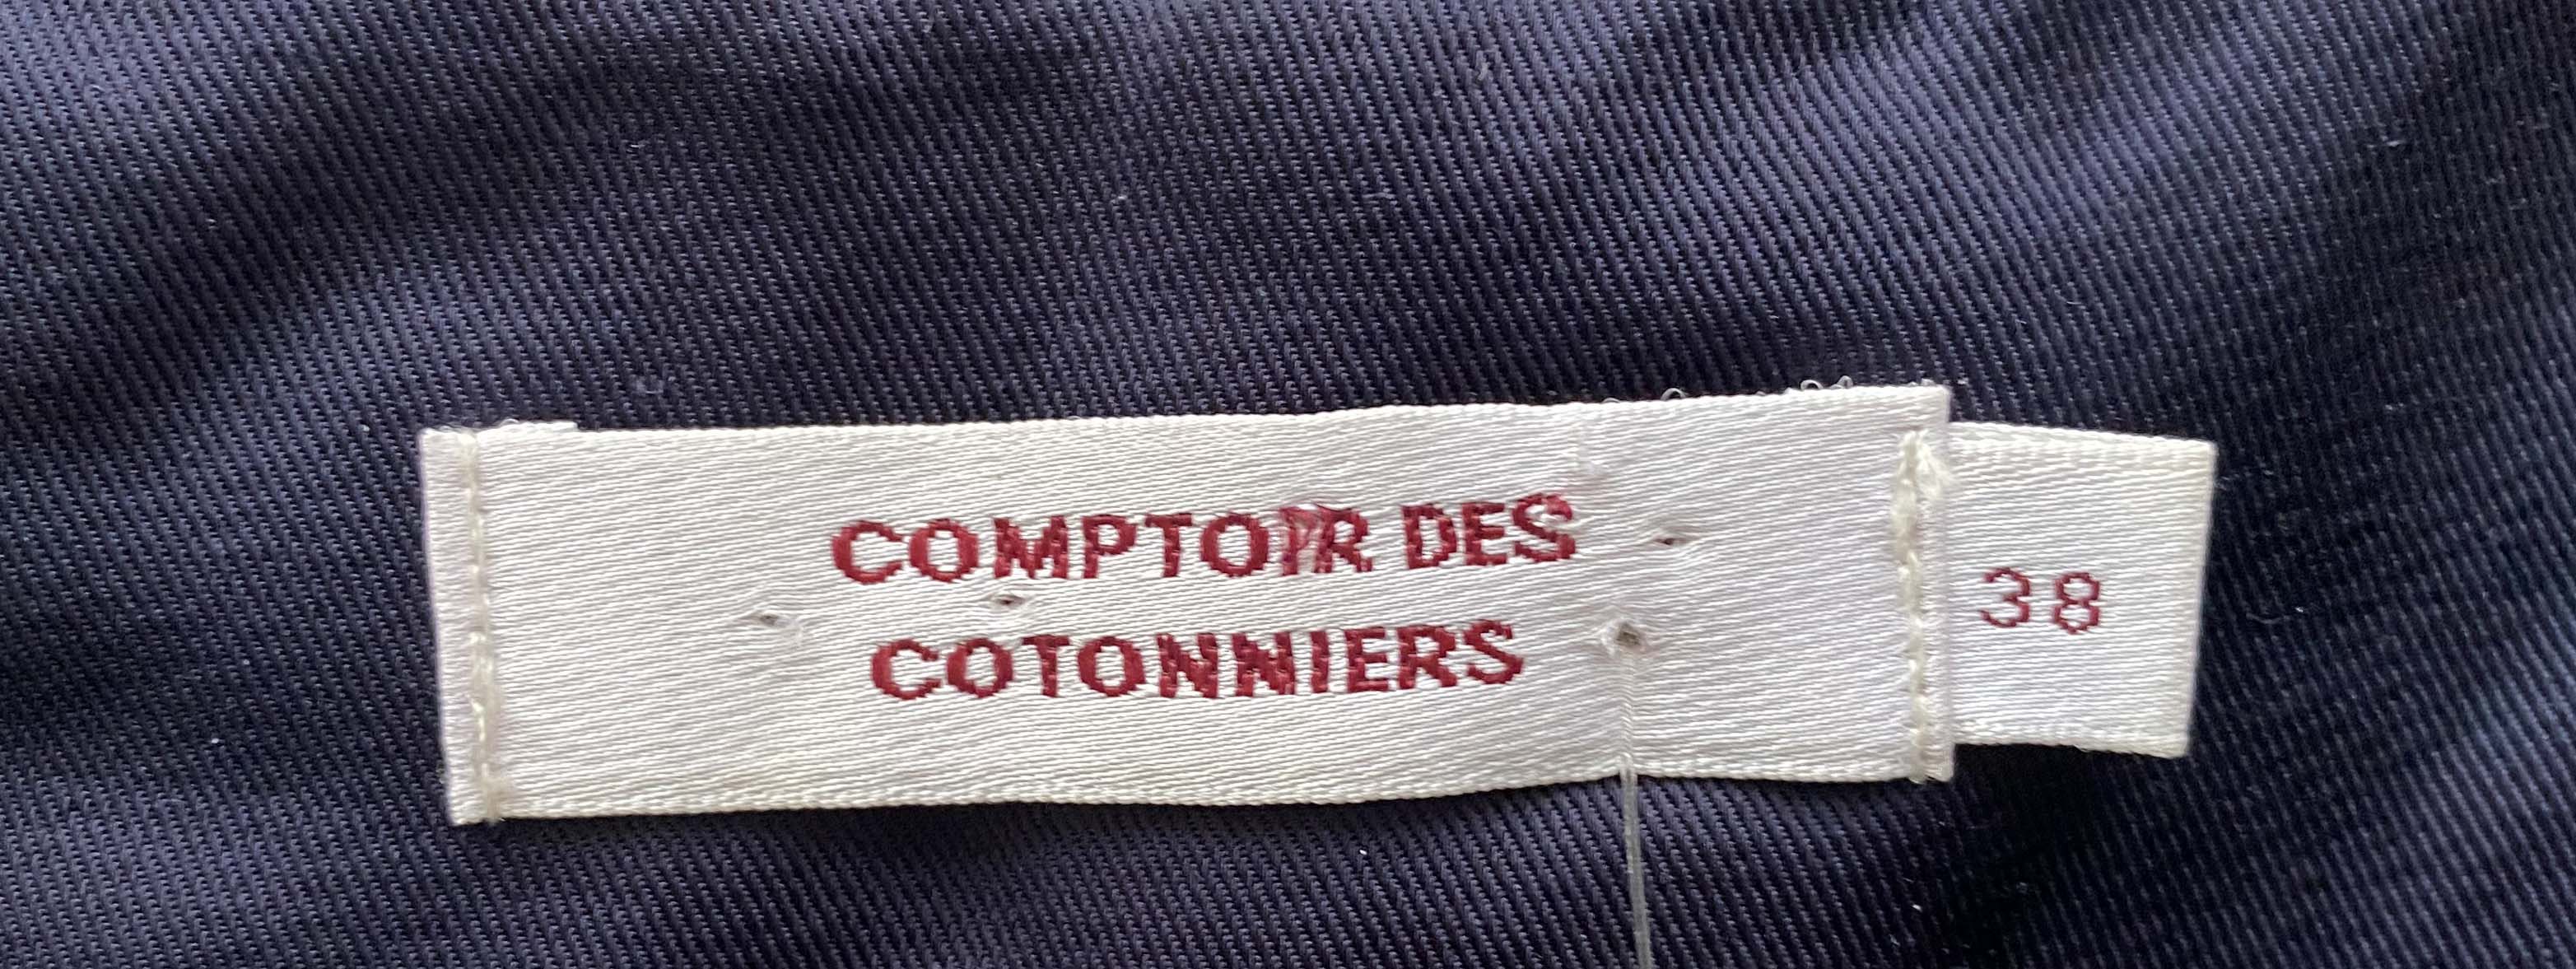 COMPTOIR DES COTONNIERS blouse